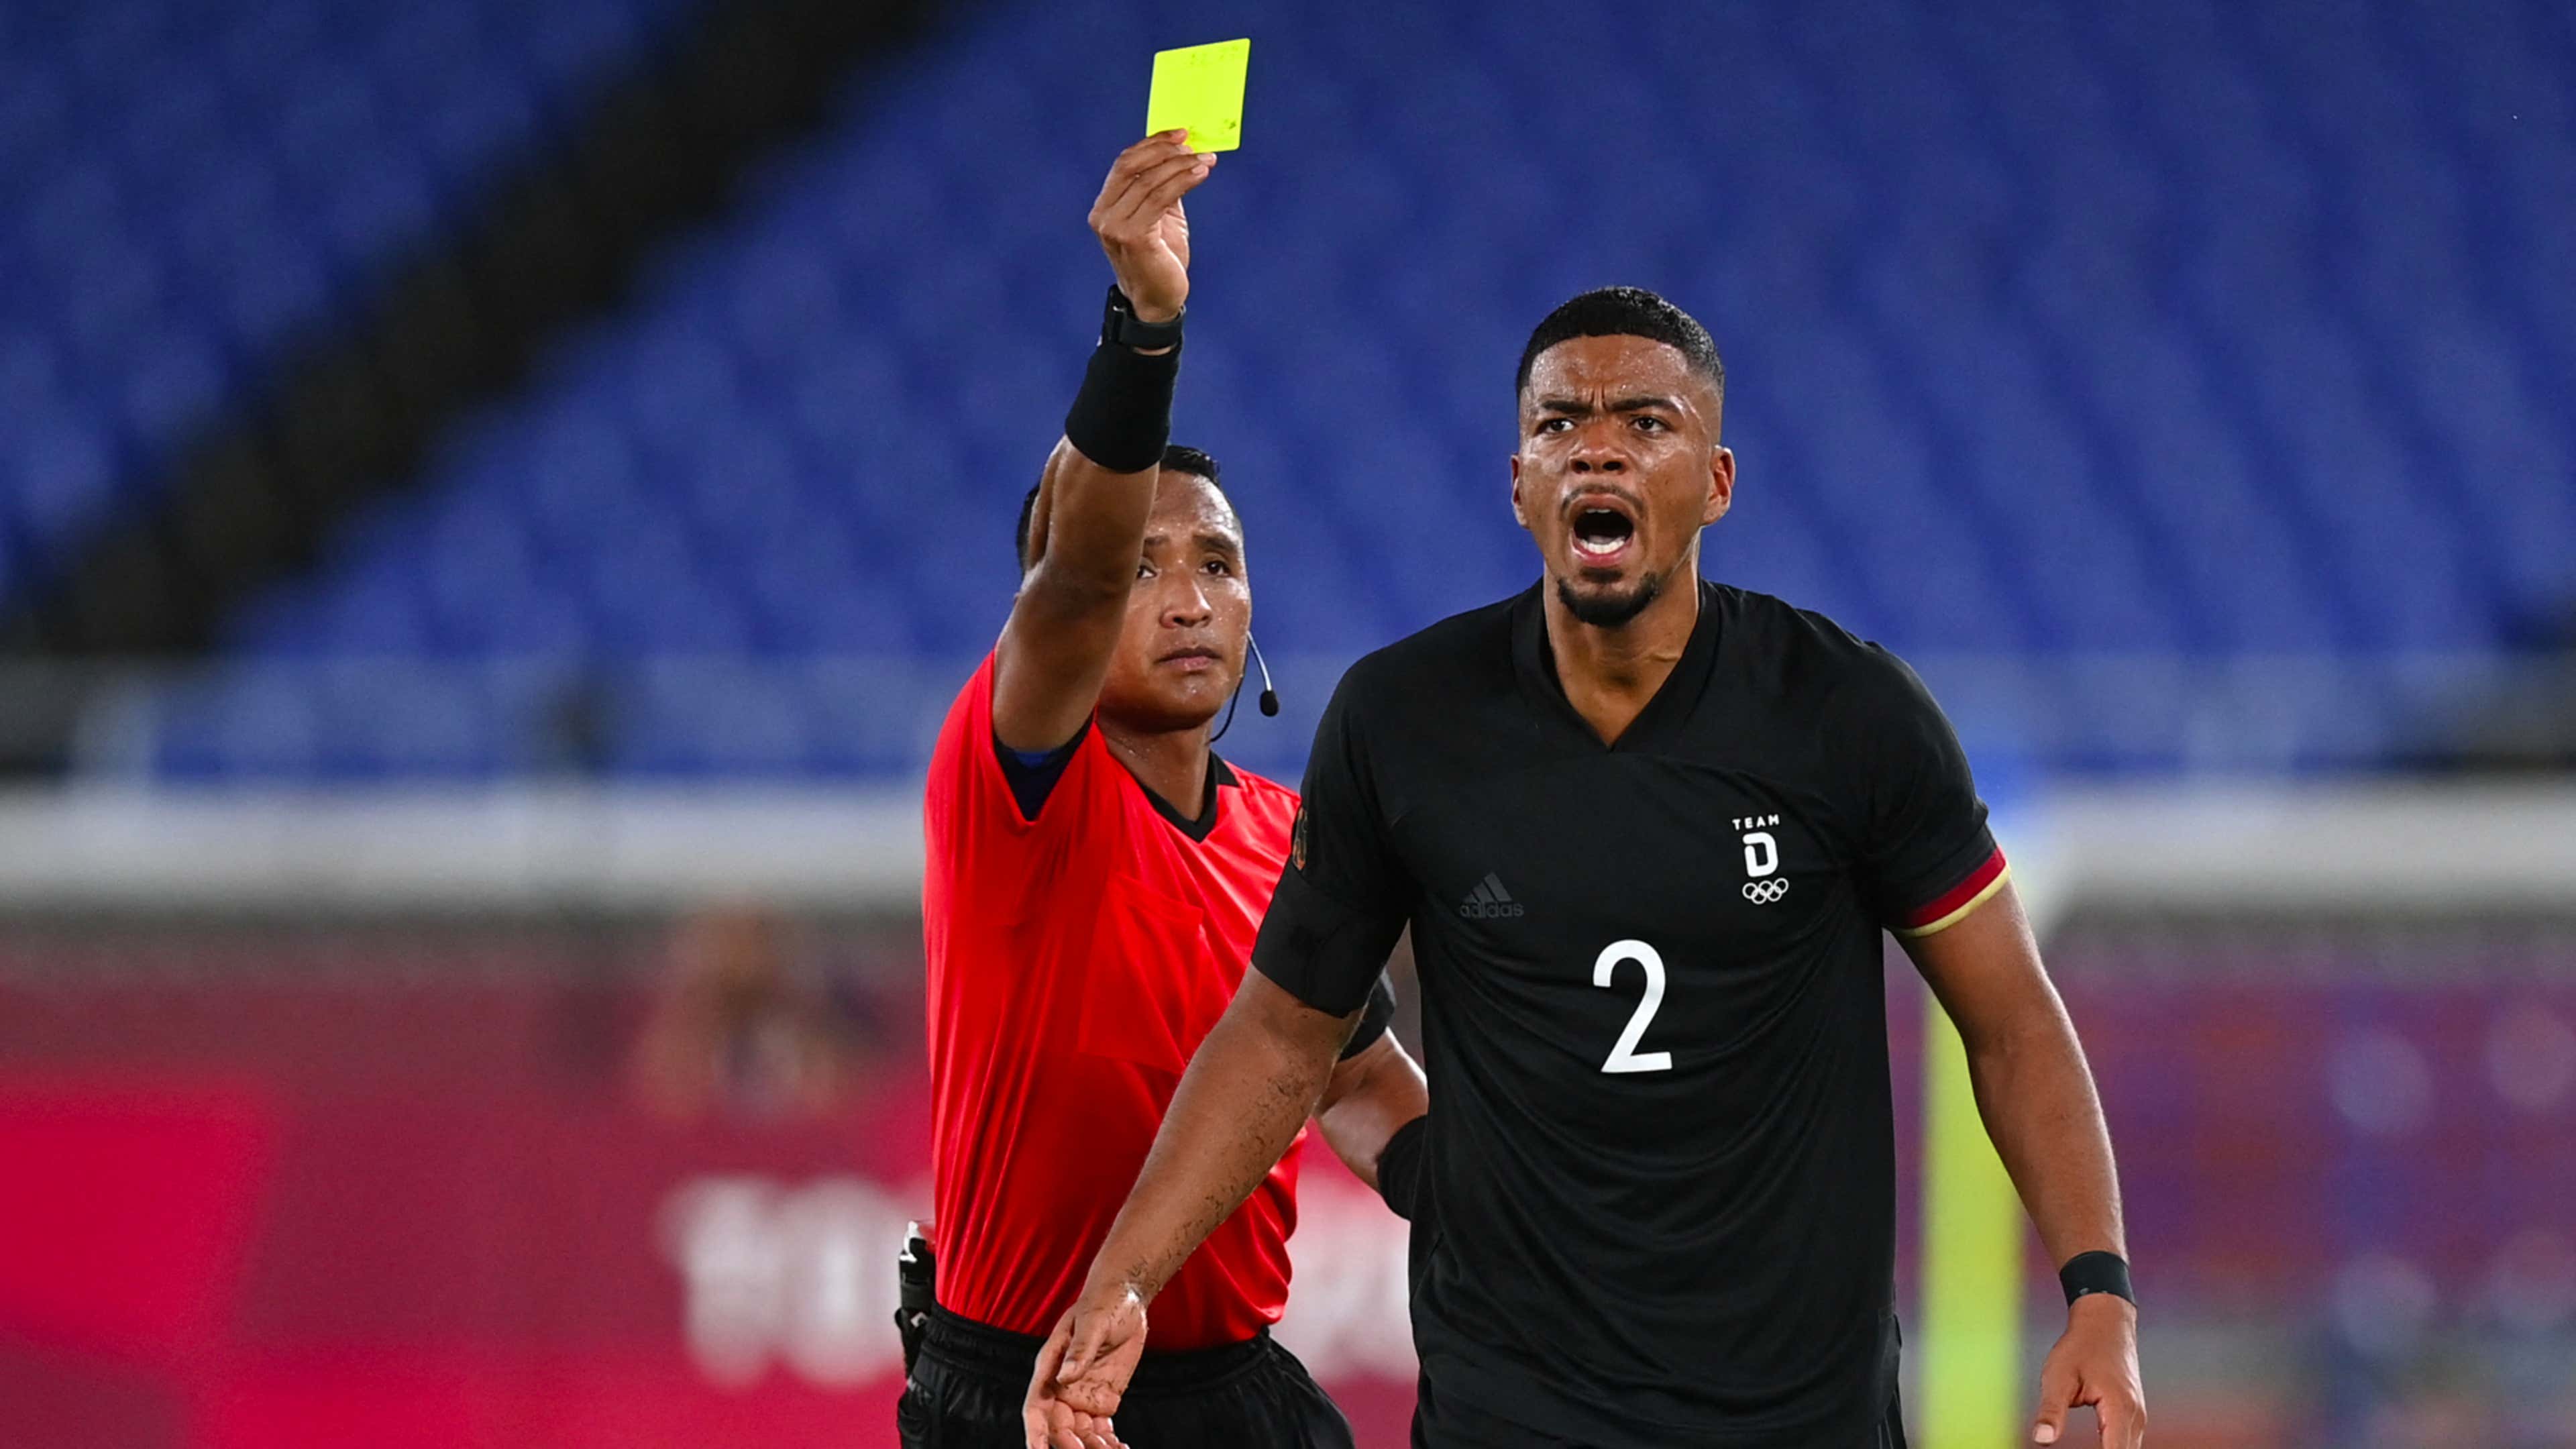 Para llevar Bolsa loco Quién es Iván Barton, el árbitro de Inglaterra vs. Senegal por el Mundial  Qatar 2022? | Goal.com Colombia